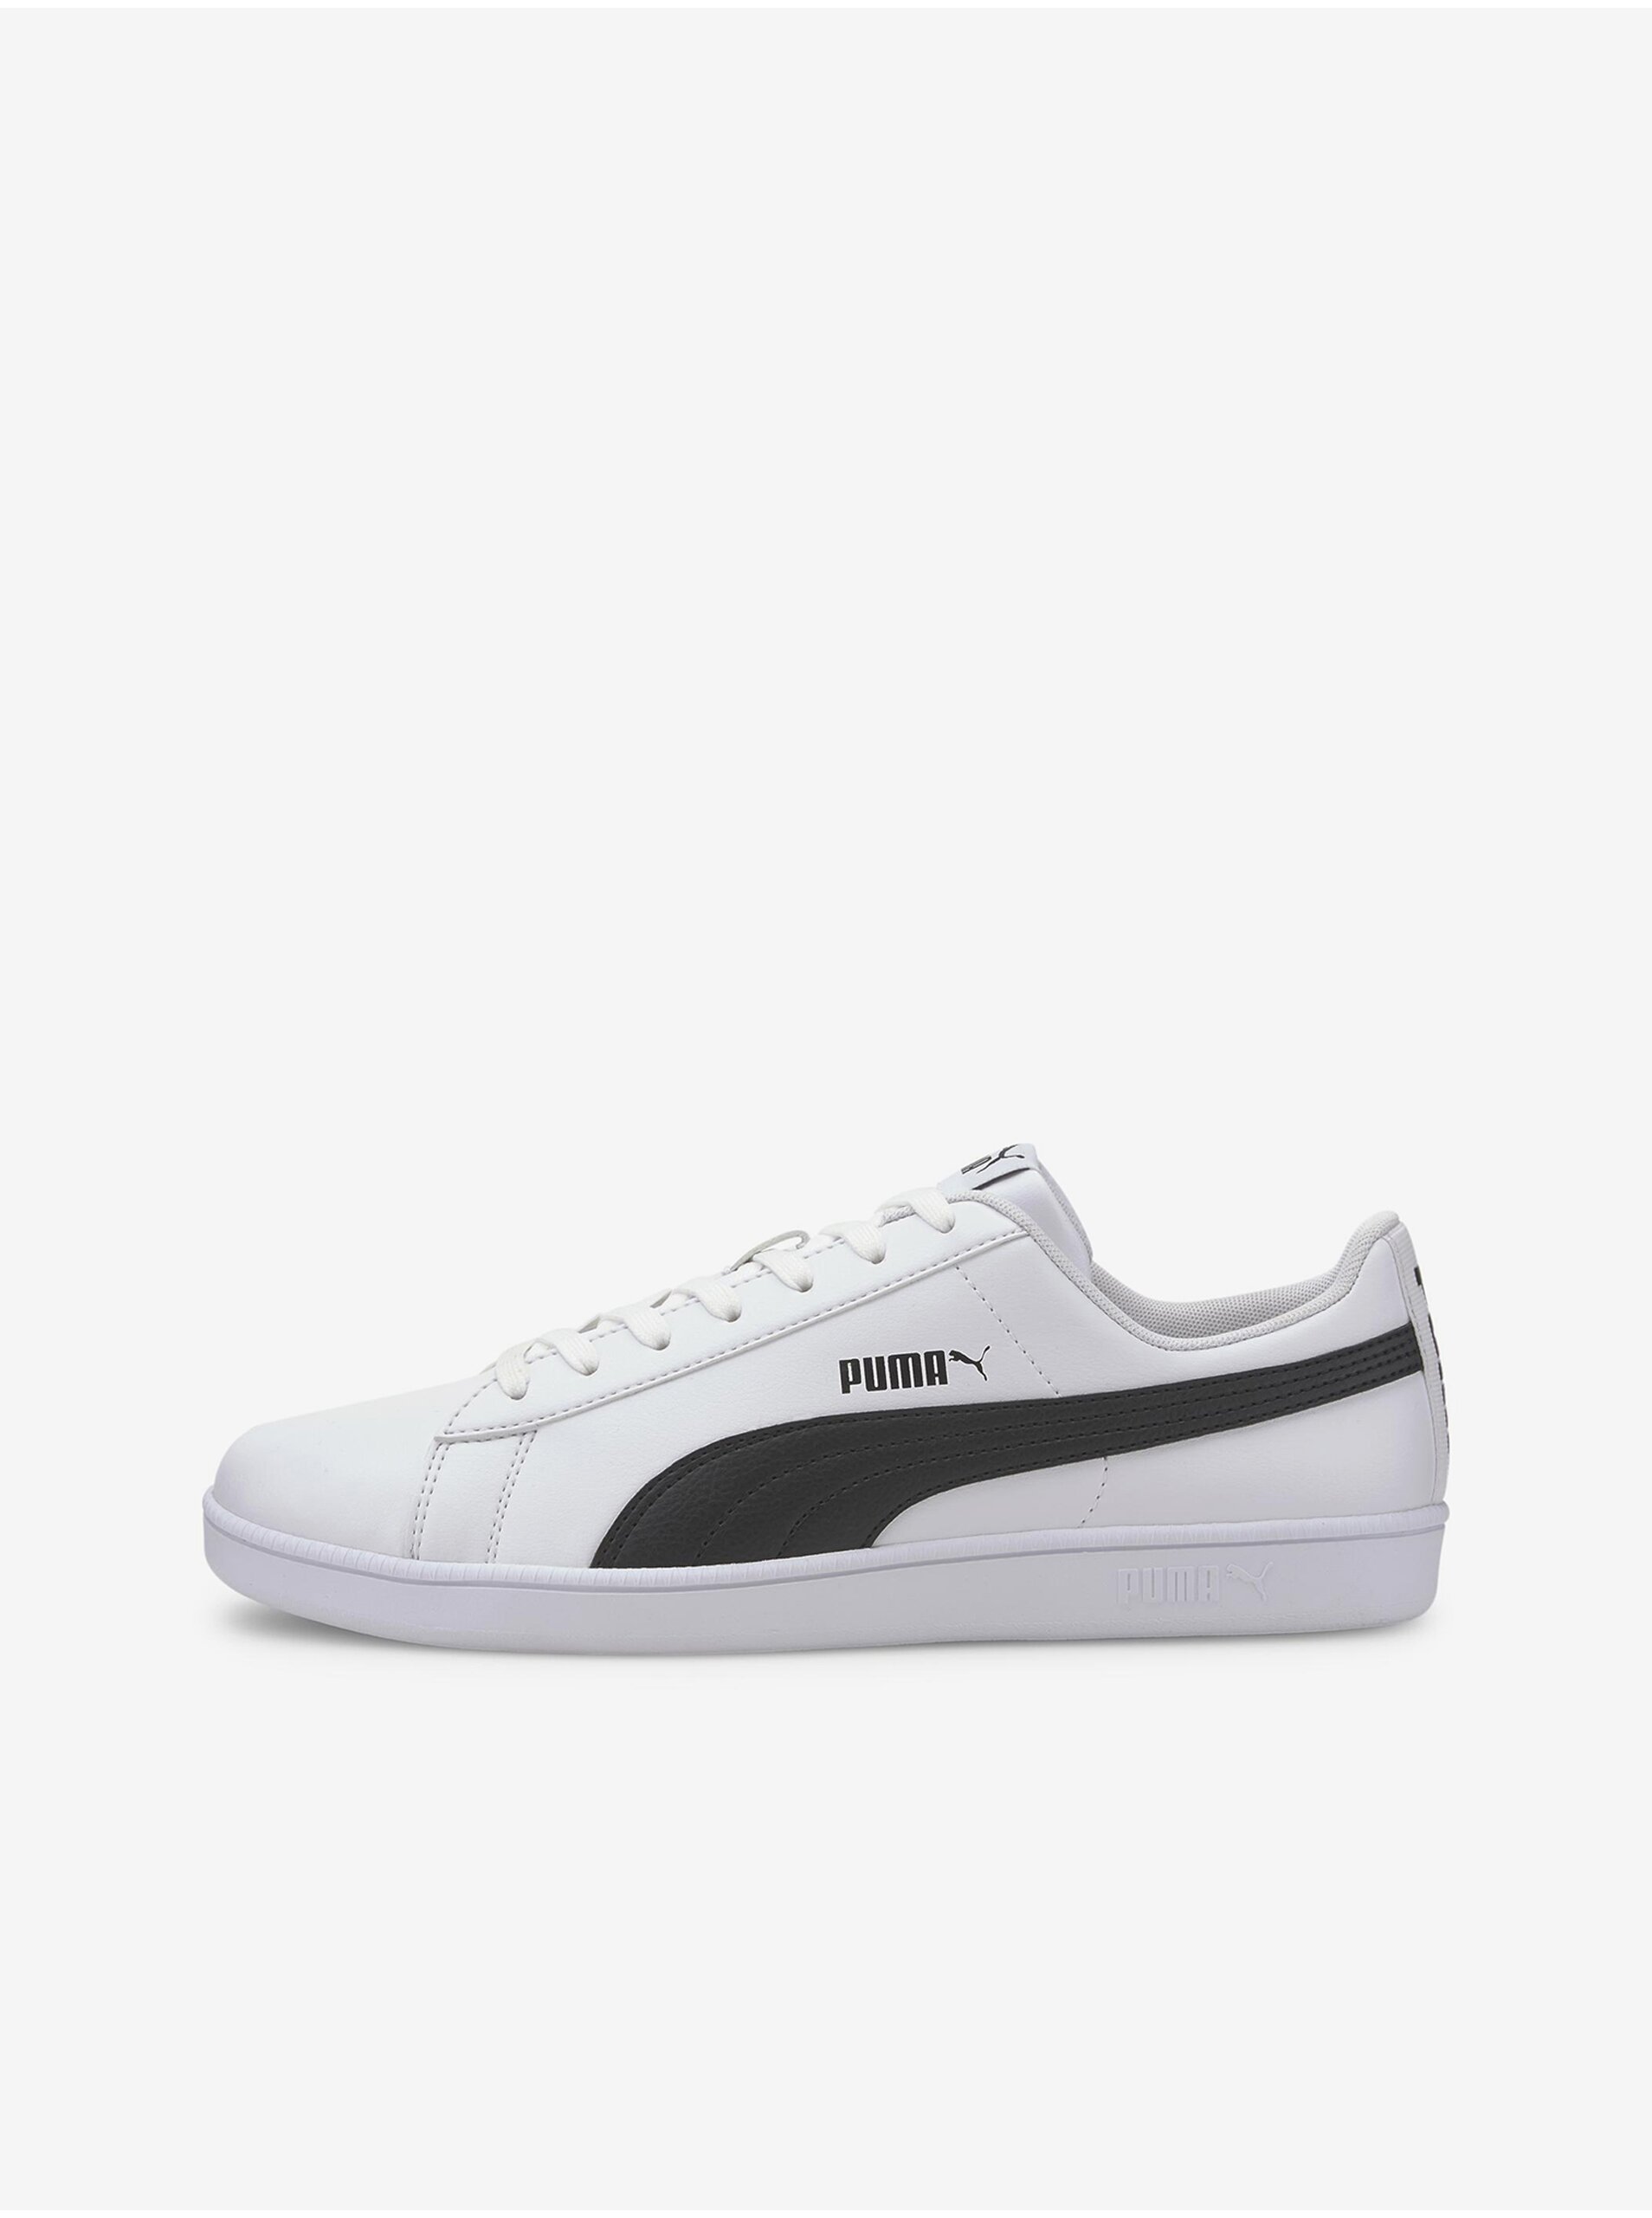 E-shop Černo-bílé tenisky Puma Up